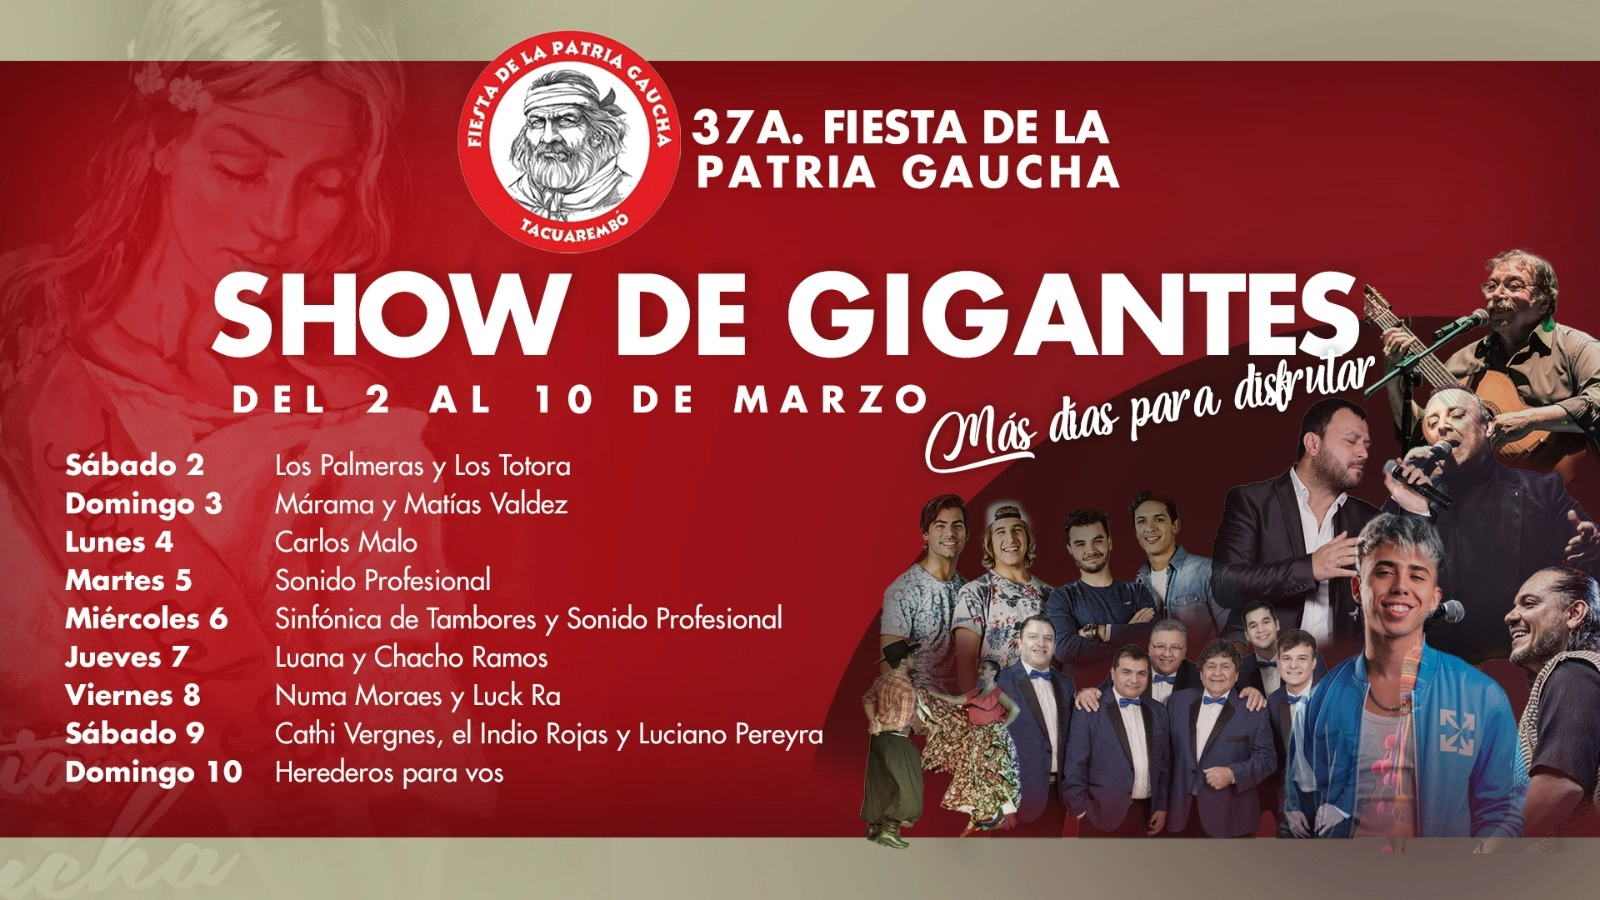 Afiche de la Fiesta de la Patria Gaucha en Tacuarembó.